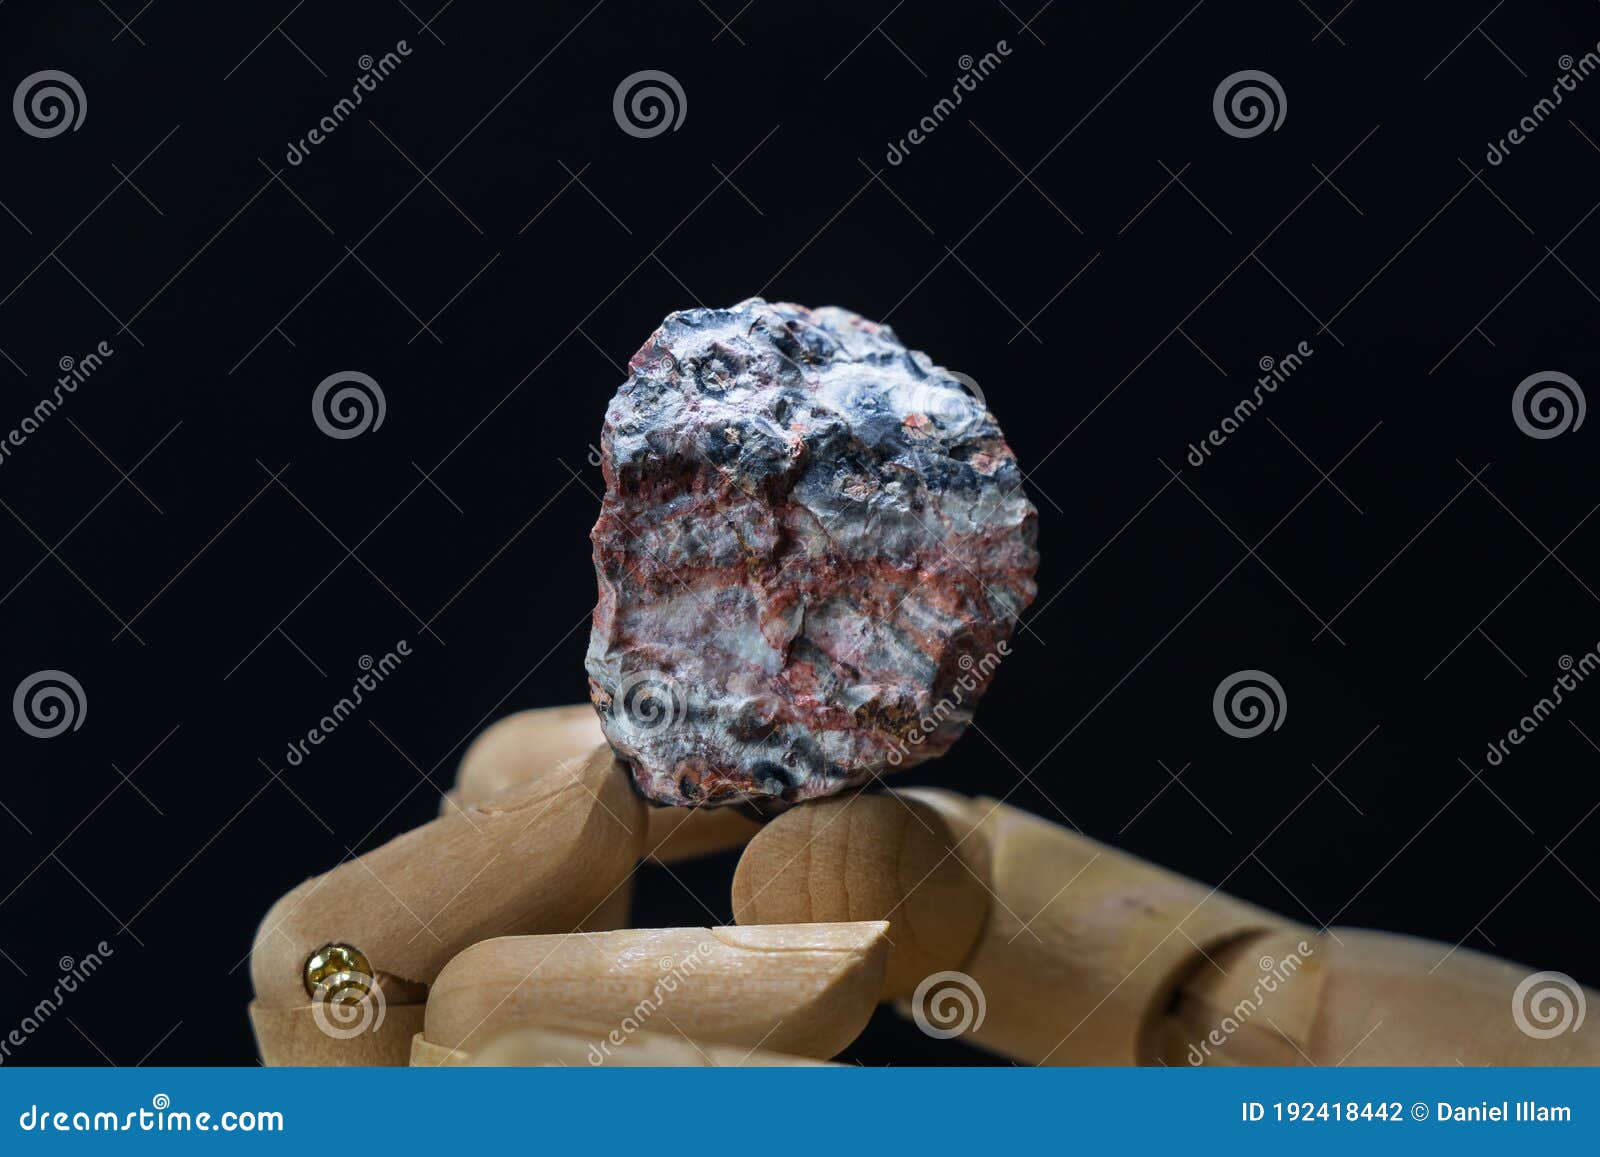 jaspe leopard minÃÂ©ral stone, uncut raw mineral on black background, white background, galaxy space background